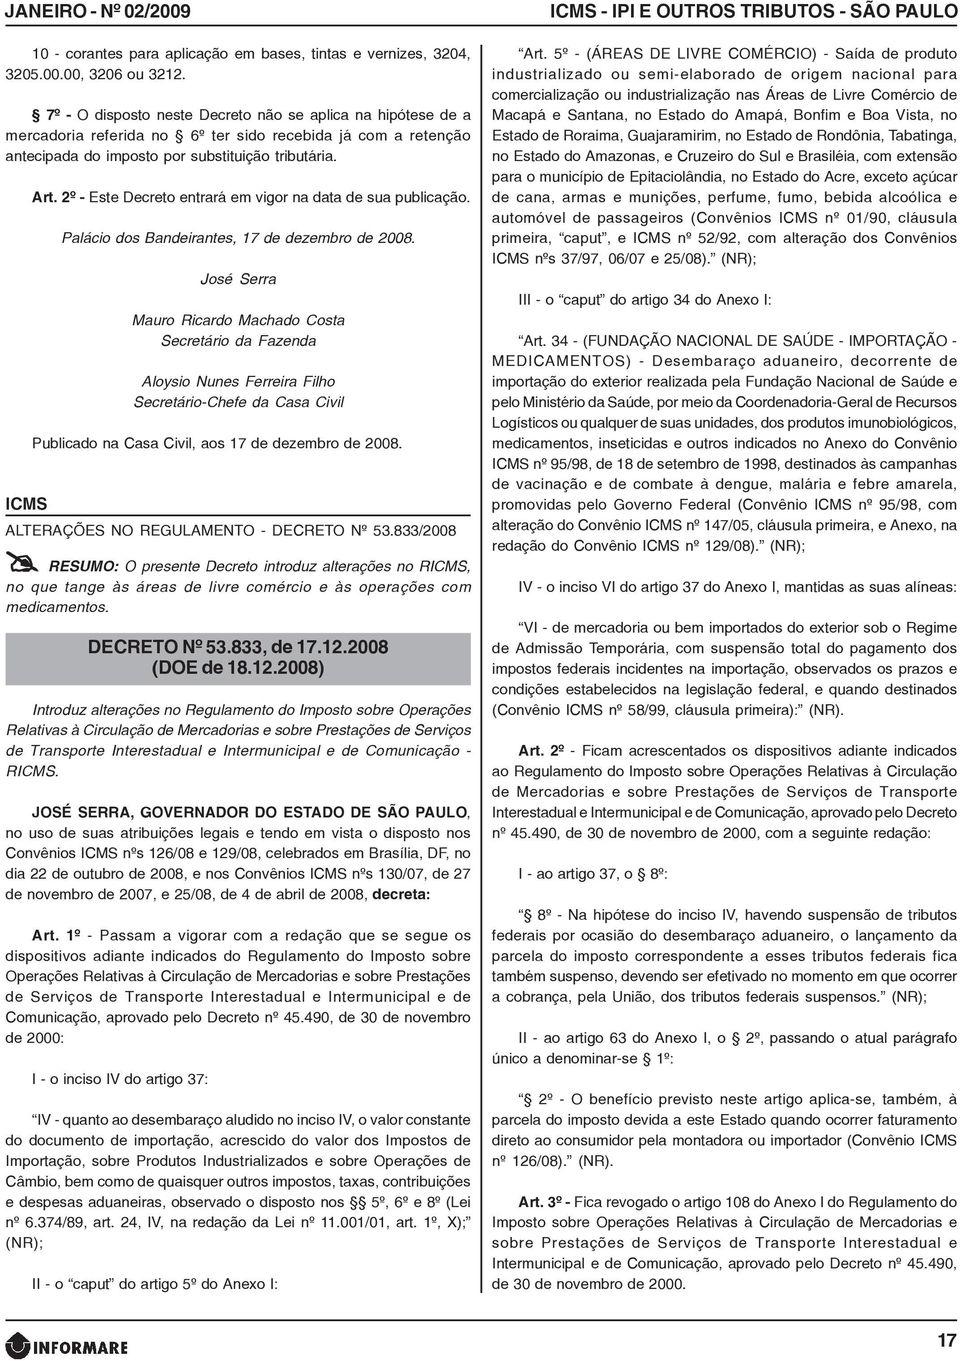 2º - Este Decreto entrará em vigor na data de sua publicação. Palácio dos Bandeirantes, 17 de dezembro de 2008.